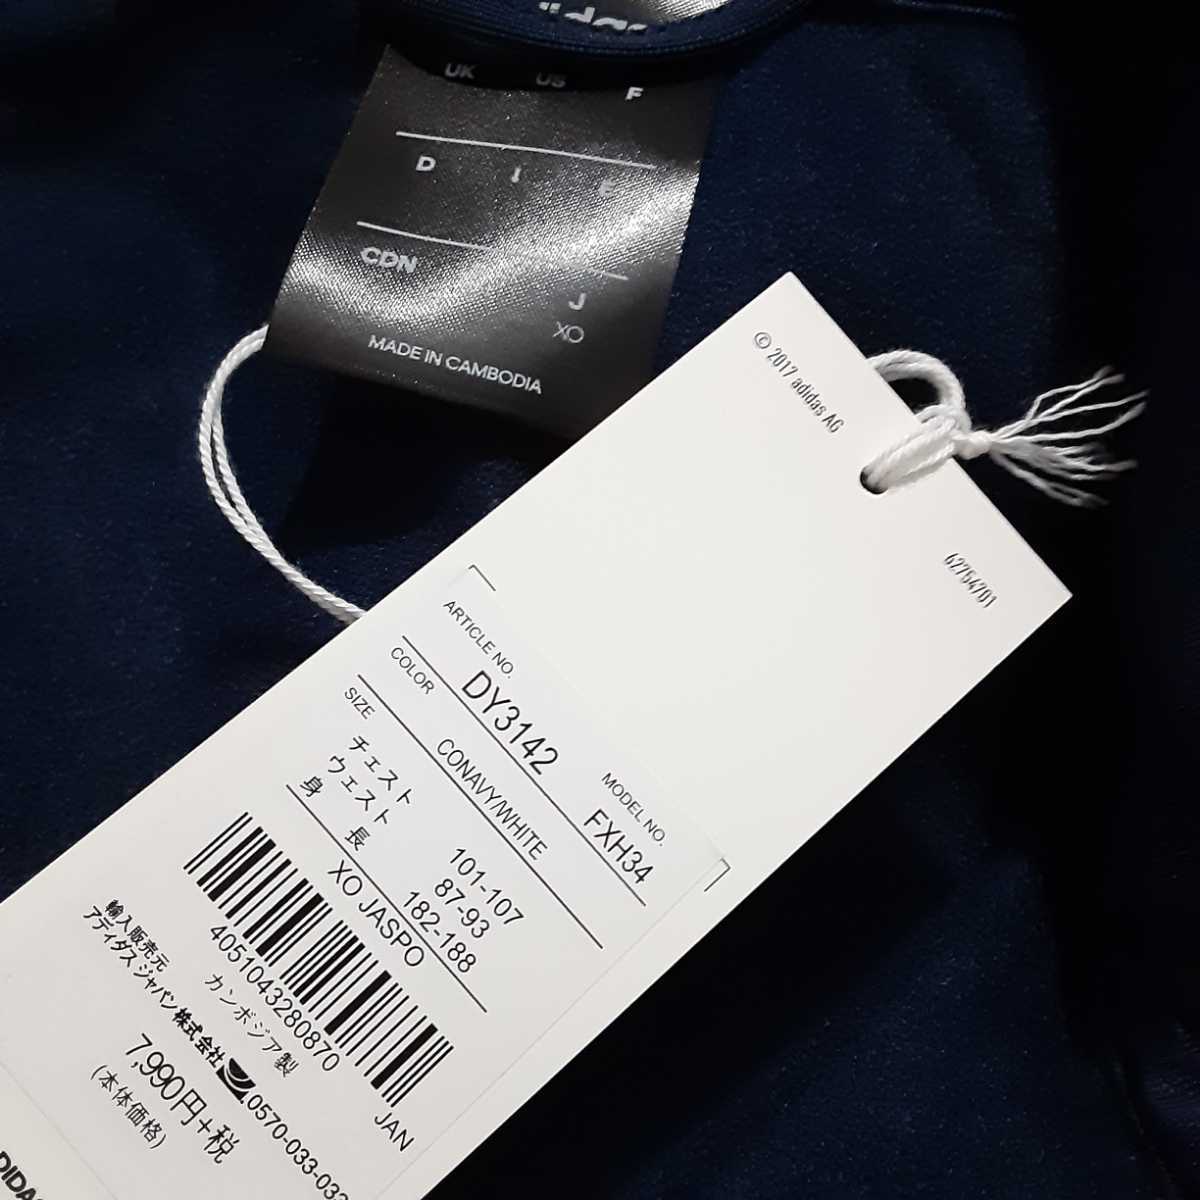  самый цена! обычная цена 8780 иен! новый товар! стандартный товар! Adidas [adidas] выставить джерси тренировка одежда верх и низ в комплекте темно-синий / темно-синий размер XO